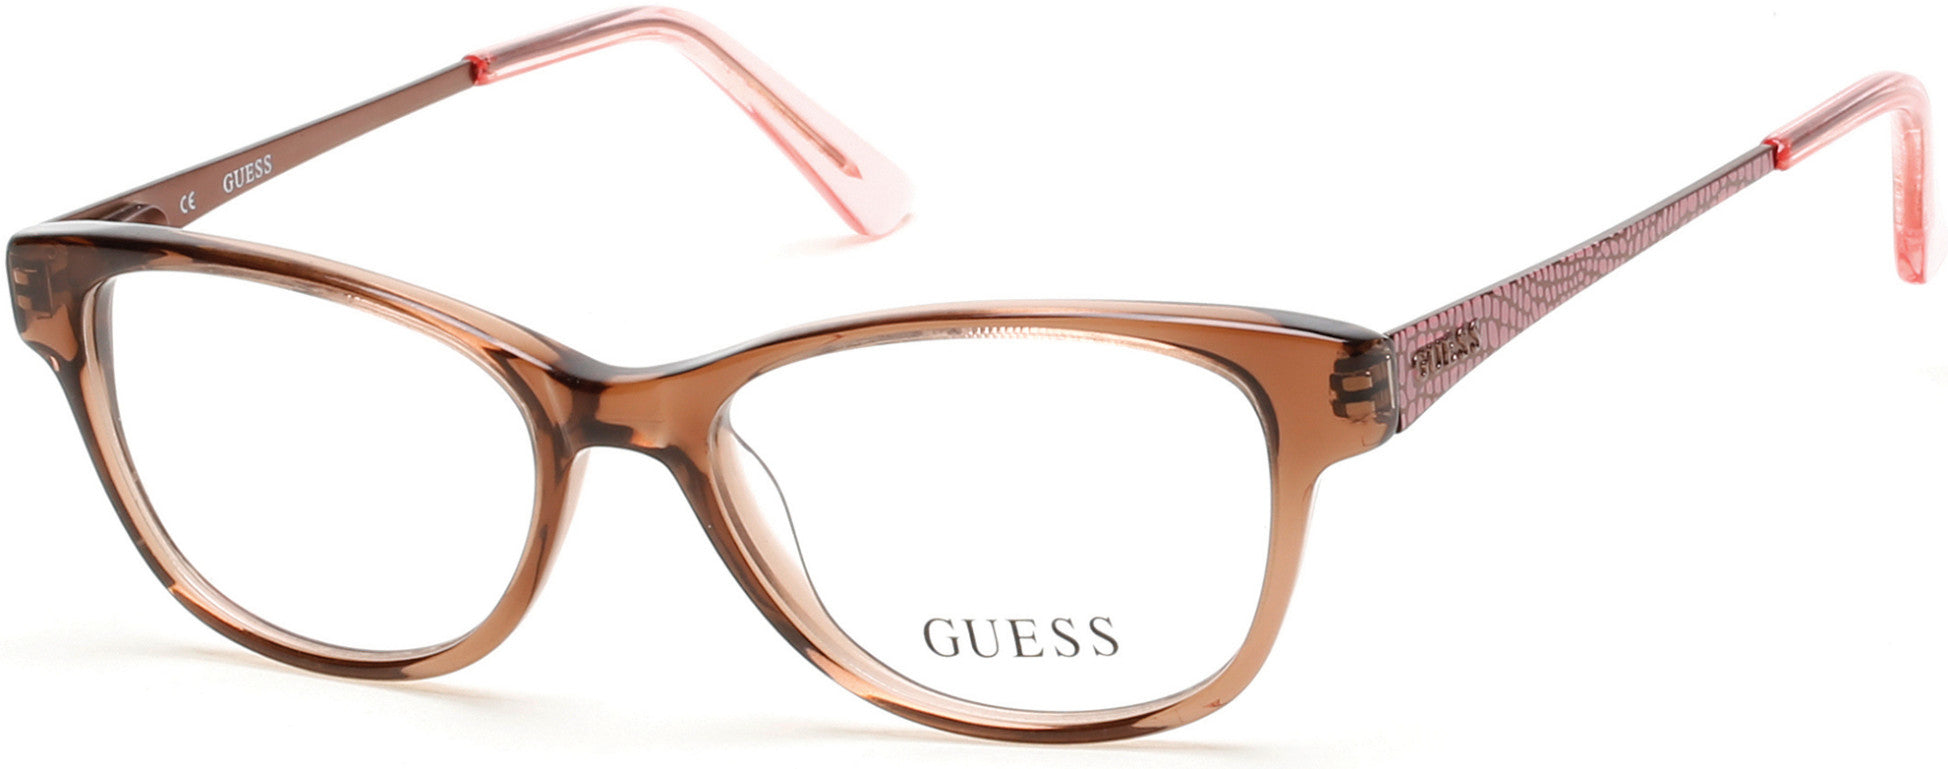 Guess GU9135 Rectangular Eyeglasses 047-047 - Light Brown/other